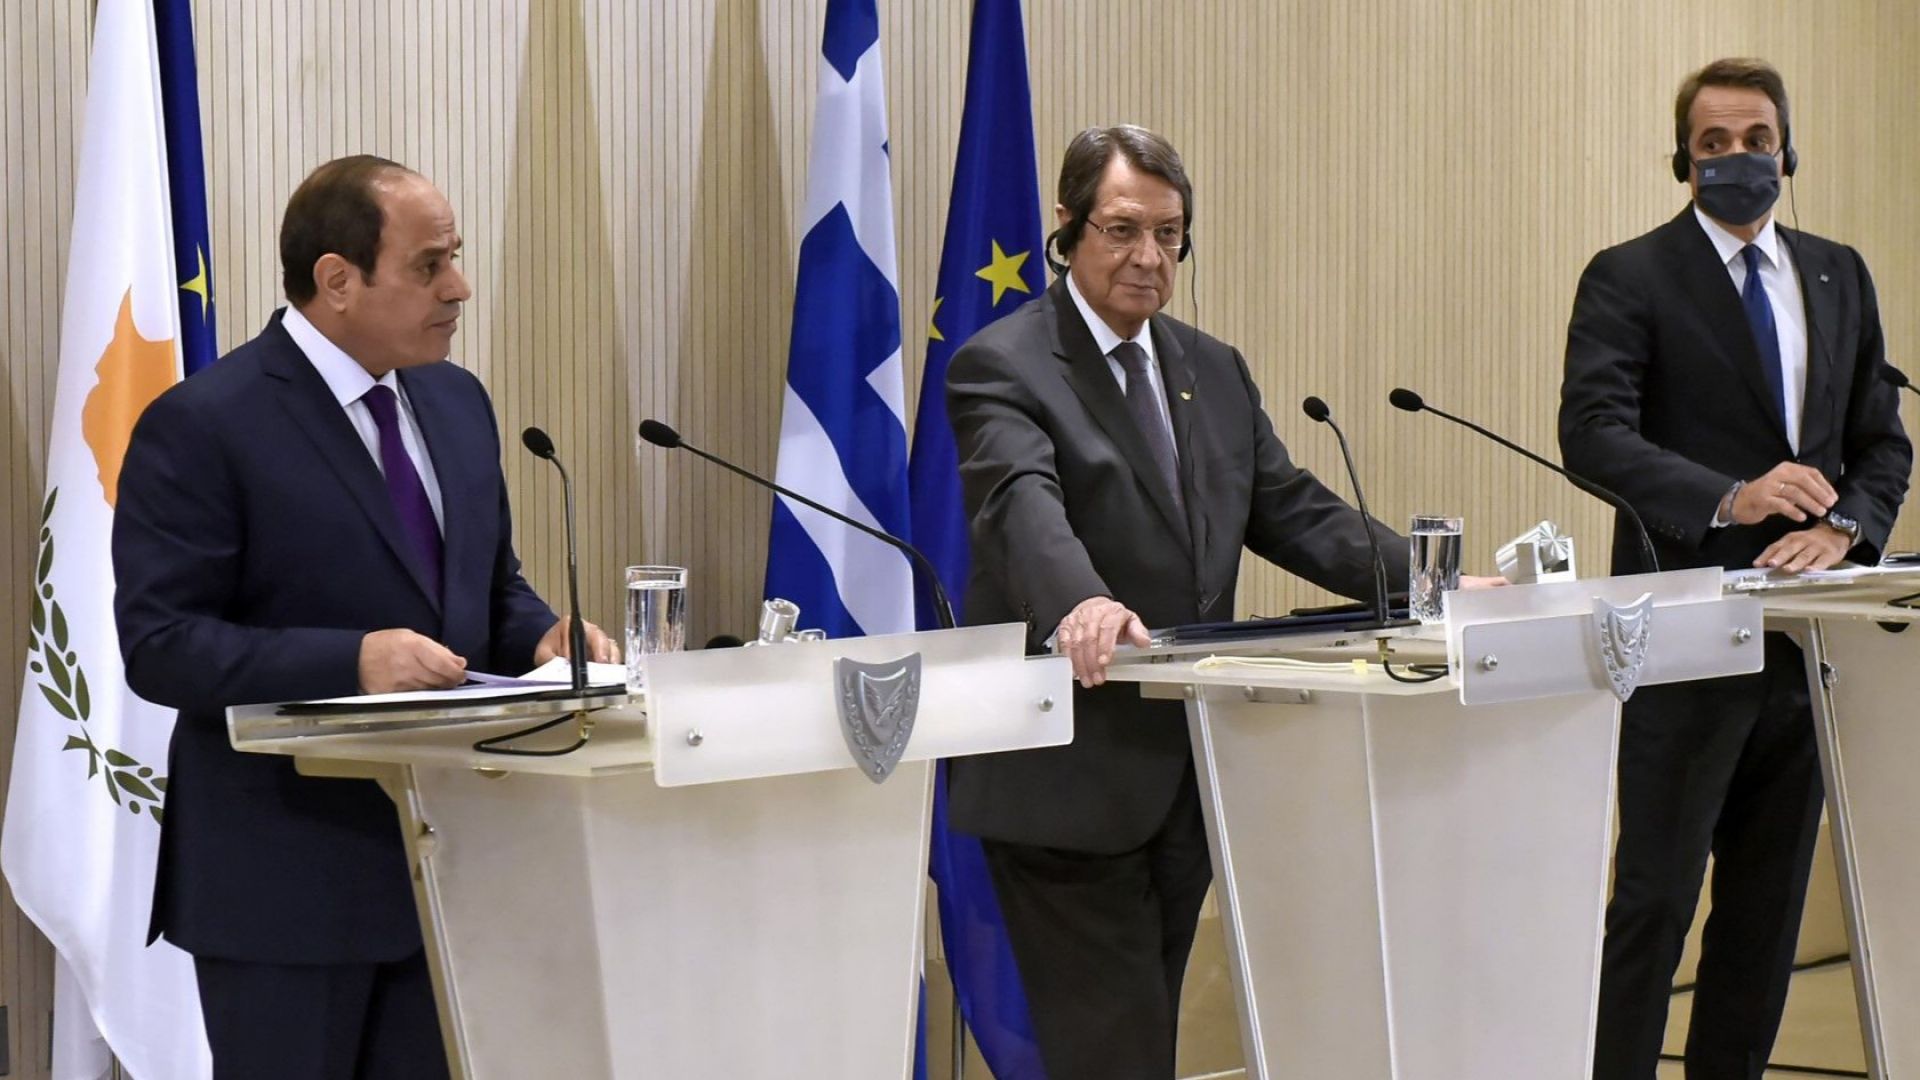 Гърция помоли страните от ЕС да не продават оръжия на "агресивна Турция"